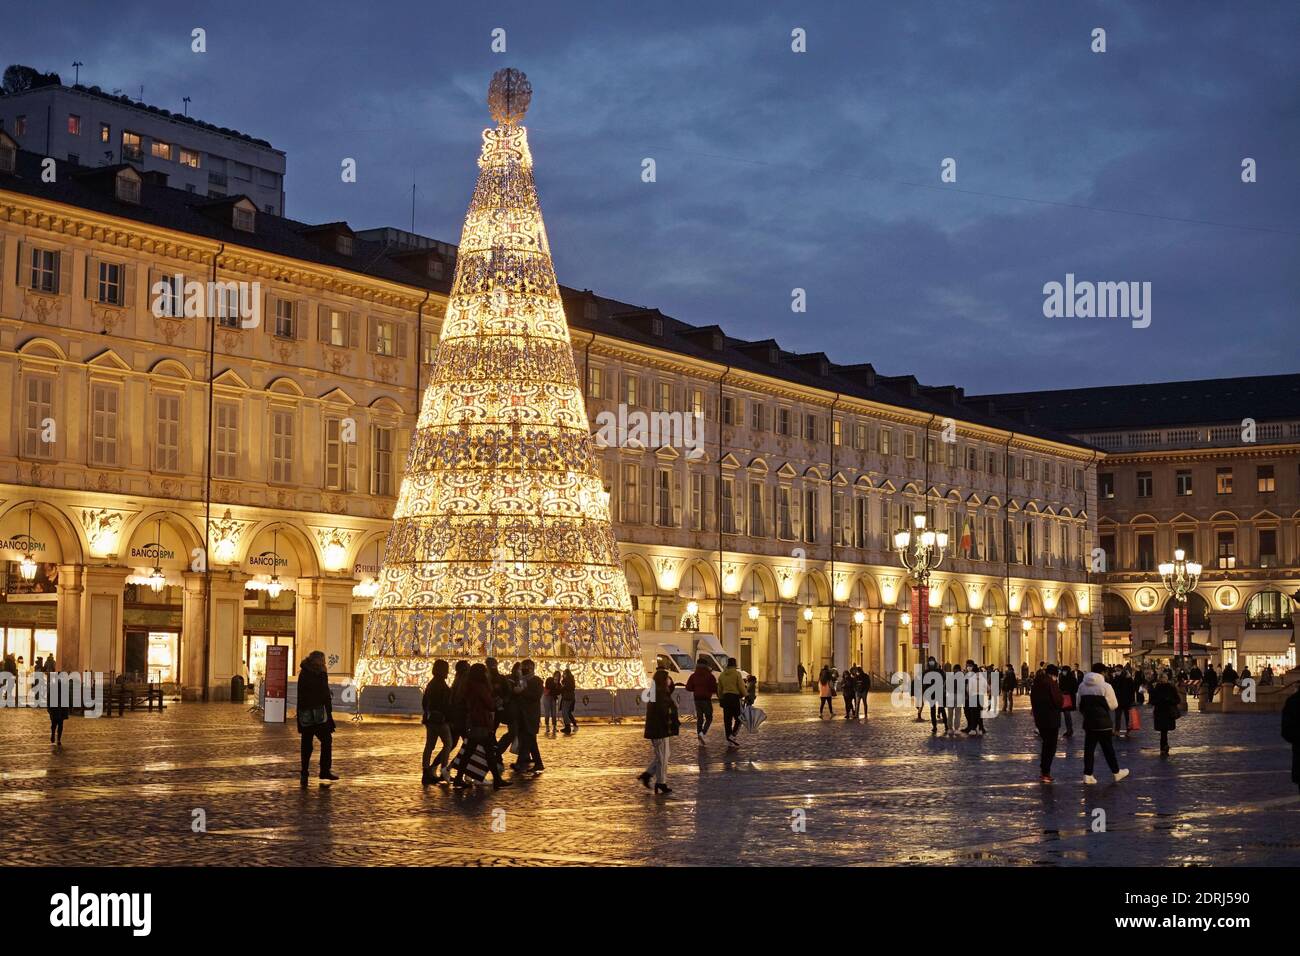 Piazza San Carlo beleuchtet an Weihnachtstagen bei Einbruch der Dunkelheit, Turin, Italien - Dezember 2020 Stockfoto